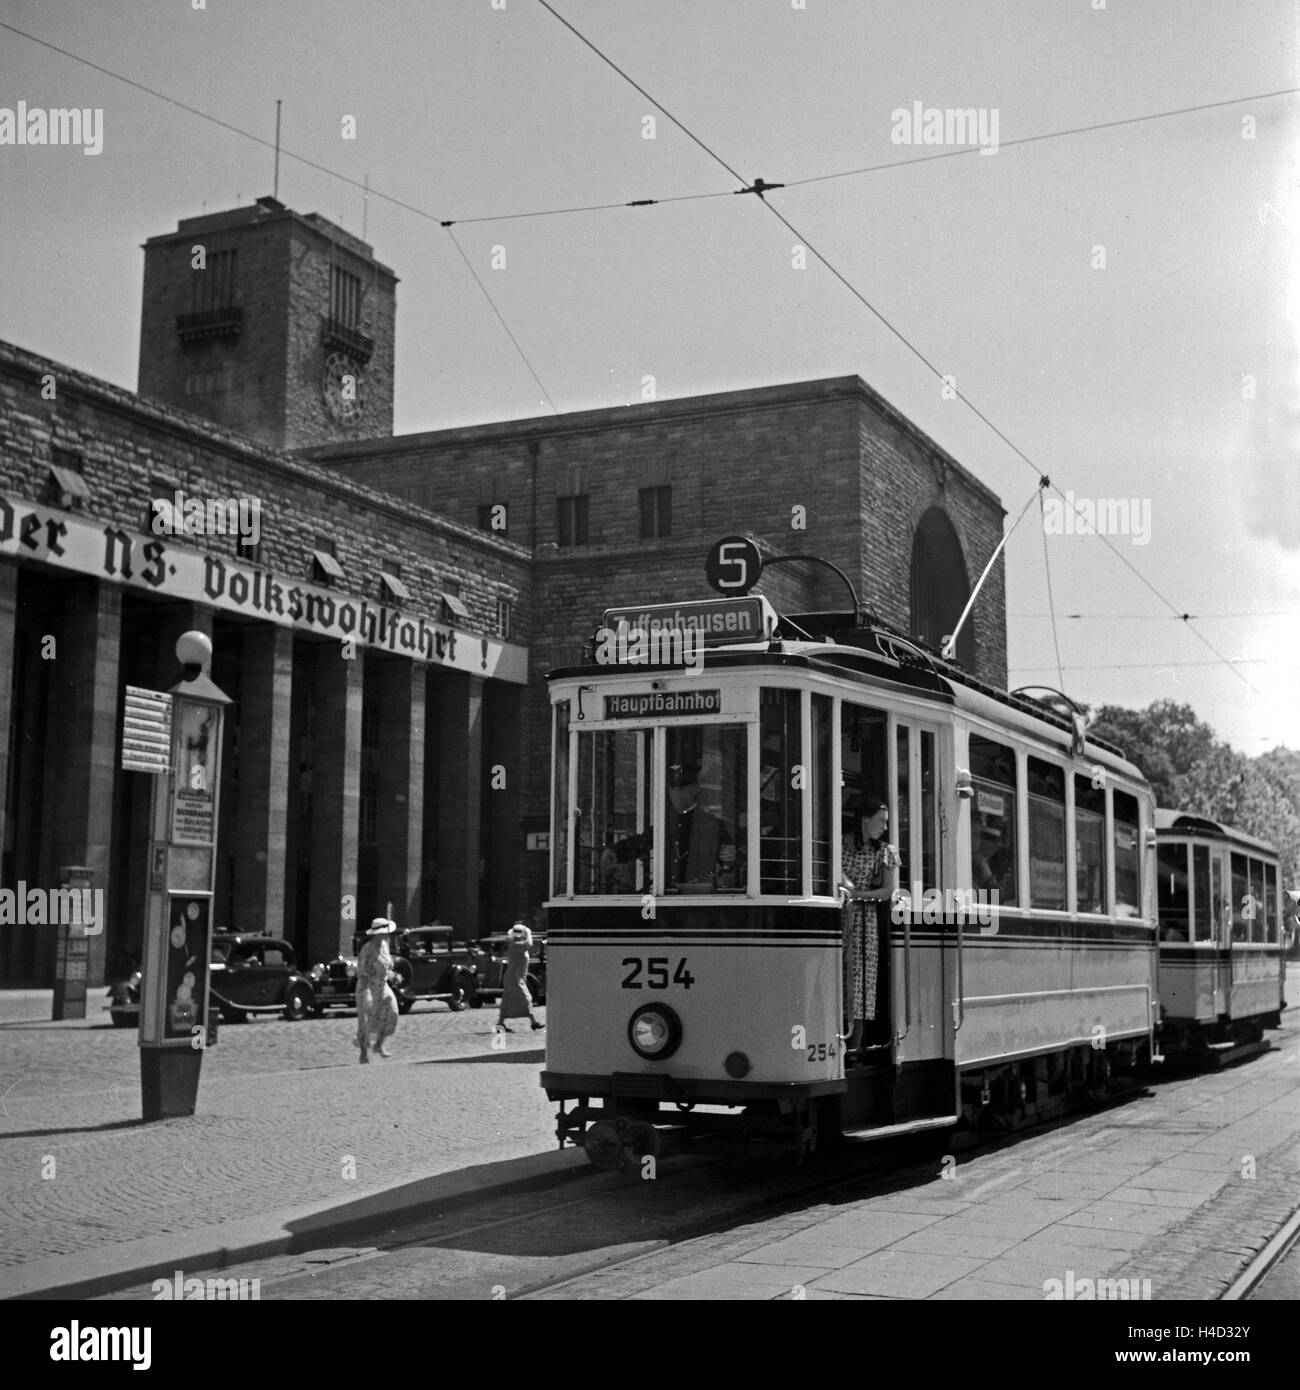 Straßenbahn der Linie 5 Richtung Zuffenhausen am Hauptbahnhof in Stuttgart, Deutschland 1930er Jahre. Tram line no. 5 with direction to Zuffenhausen in front of Stuttgart main station, Germany 1930s. Stock Photo